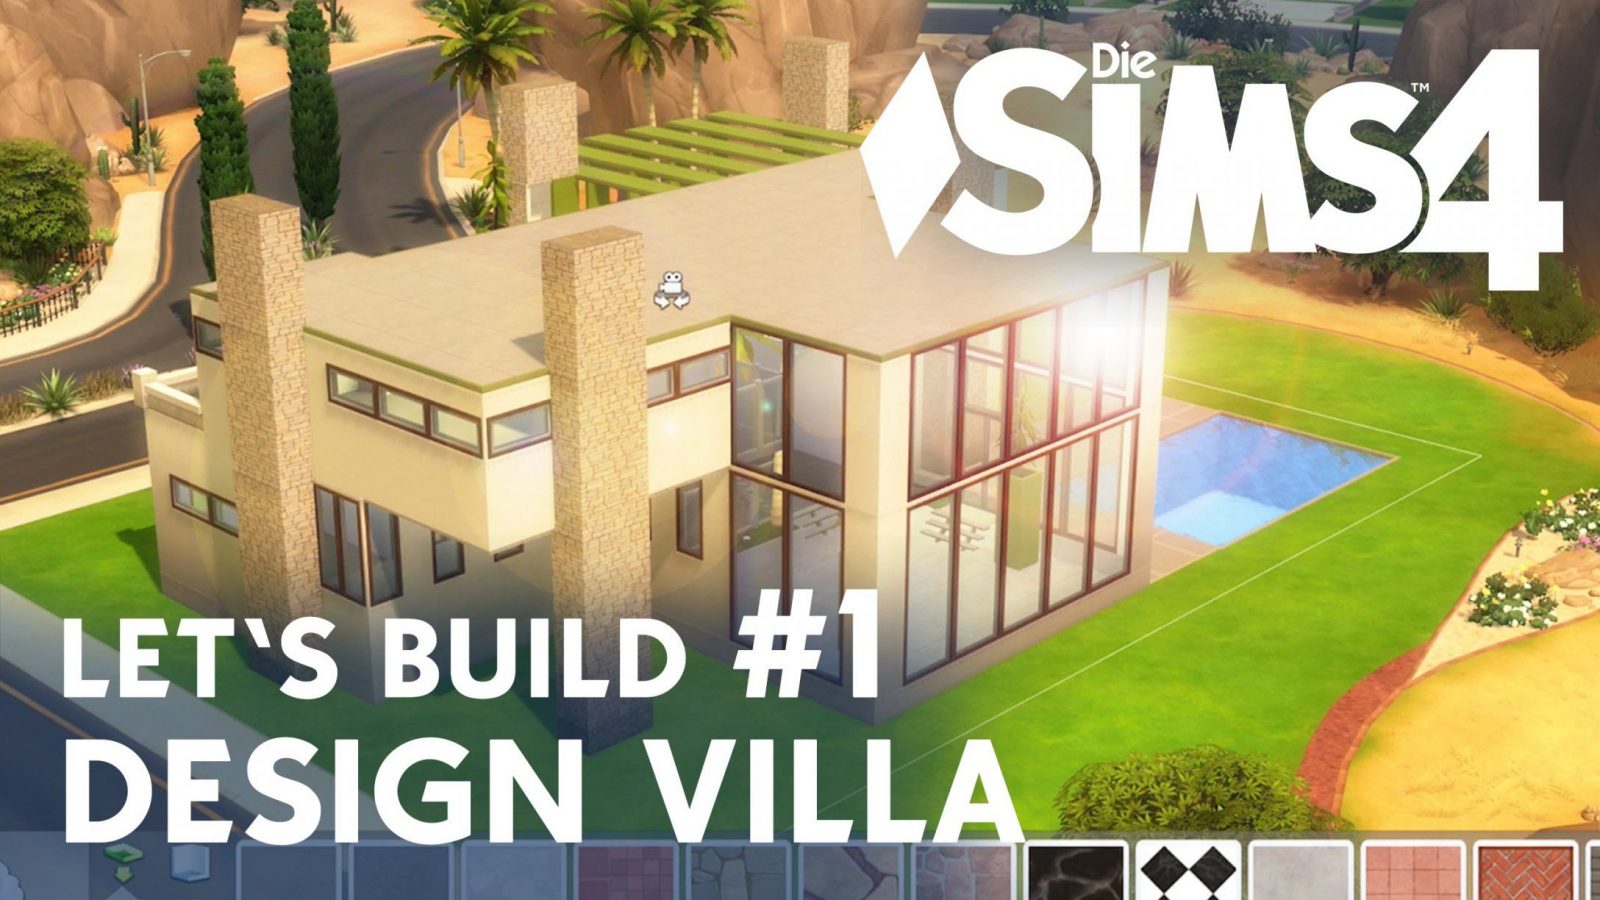 Die Sims 4 Let's Build Design Villa 1  Idee &amp; Grundriss  Youtube von Sims 4 Häuser Bauen Ideen Photo